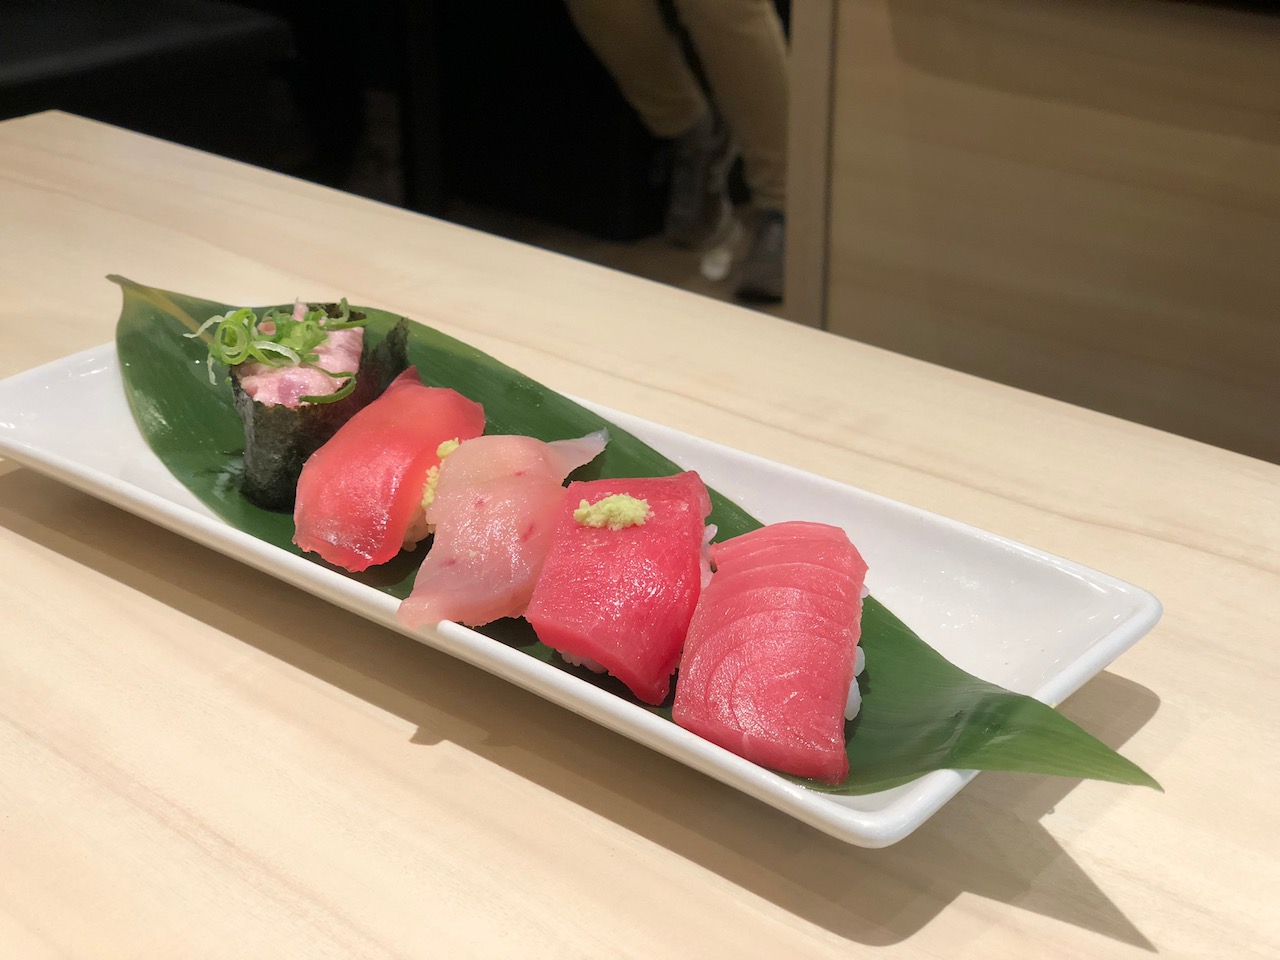 ピオレ姫路ヤング館内の回転寿司「力丸 JR姫路駅店」の海鮮丼ランチが美味すぎた！